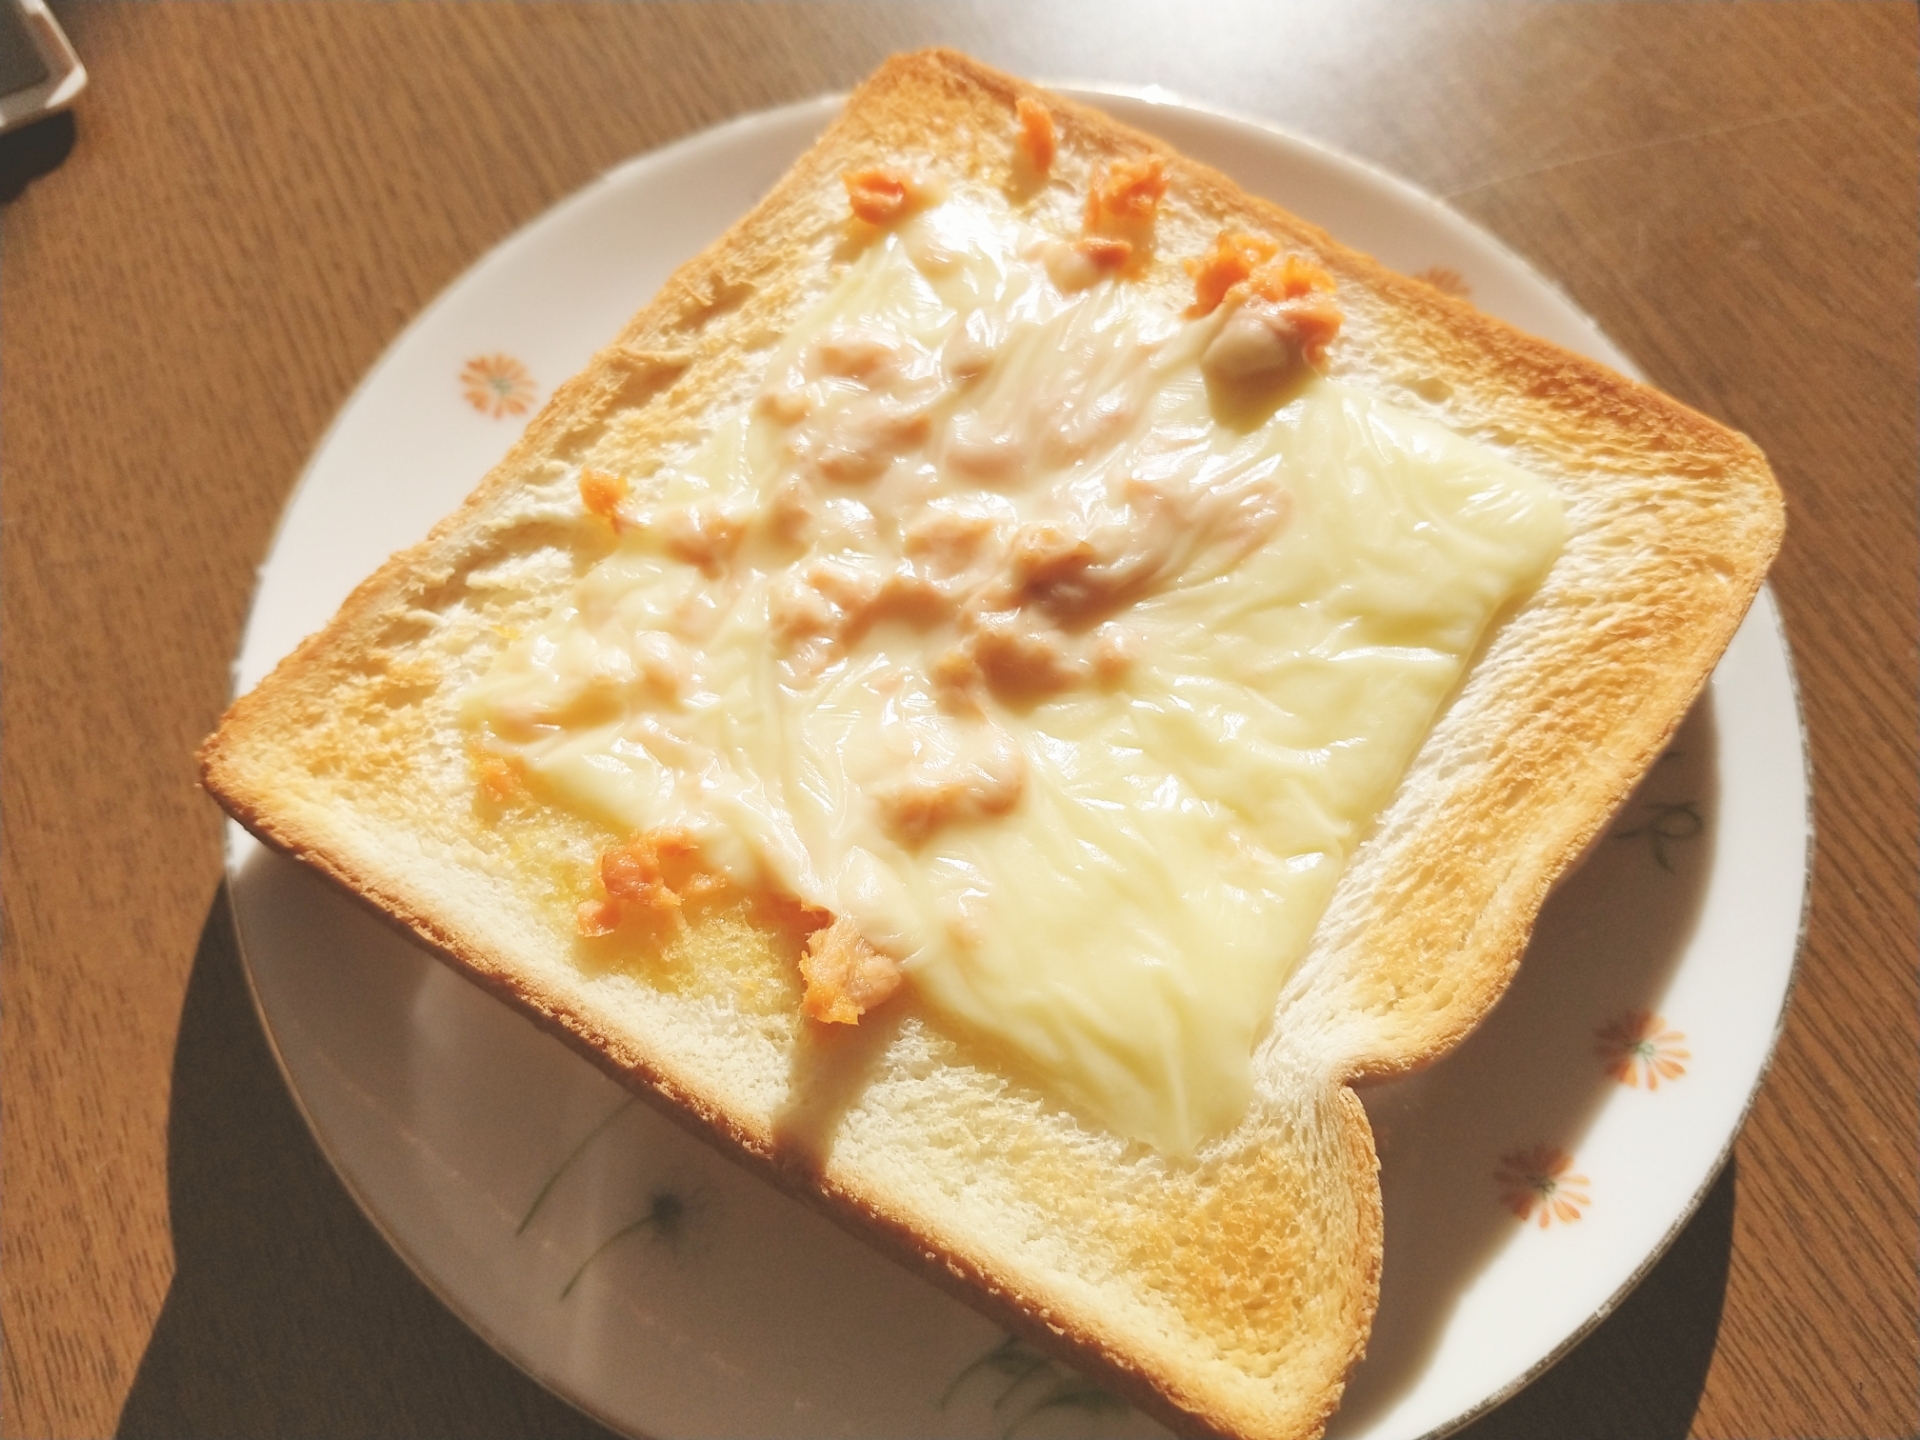 シャケフレークで作る簡単バター焼きトースト